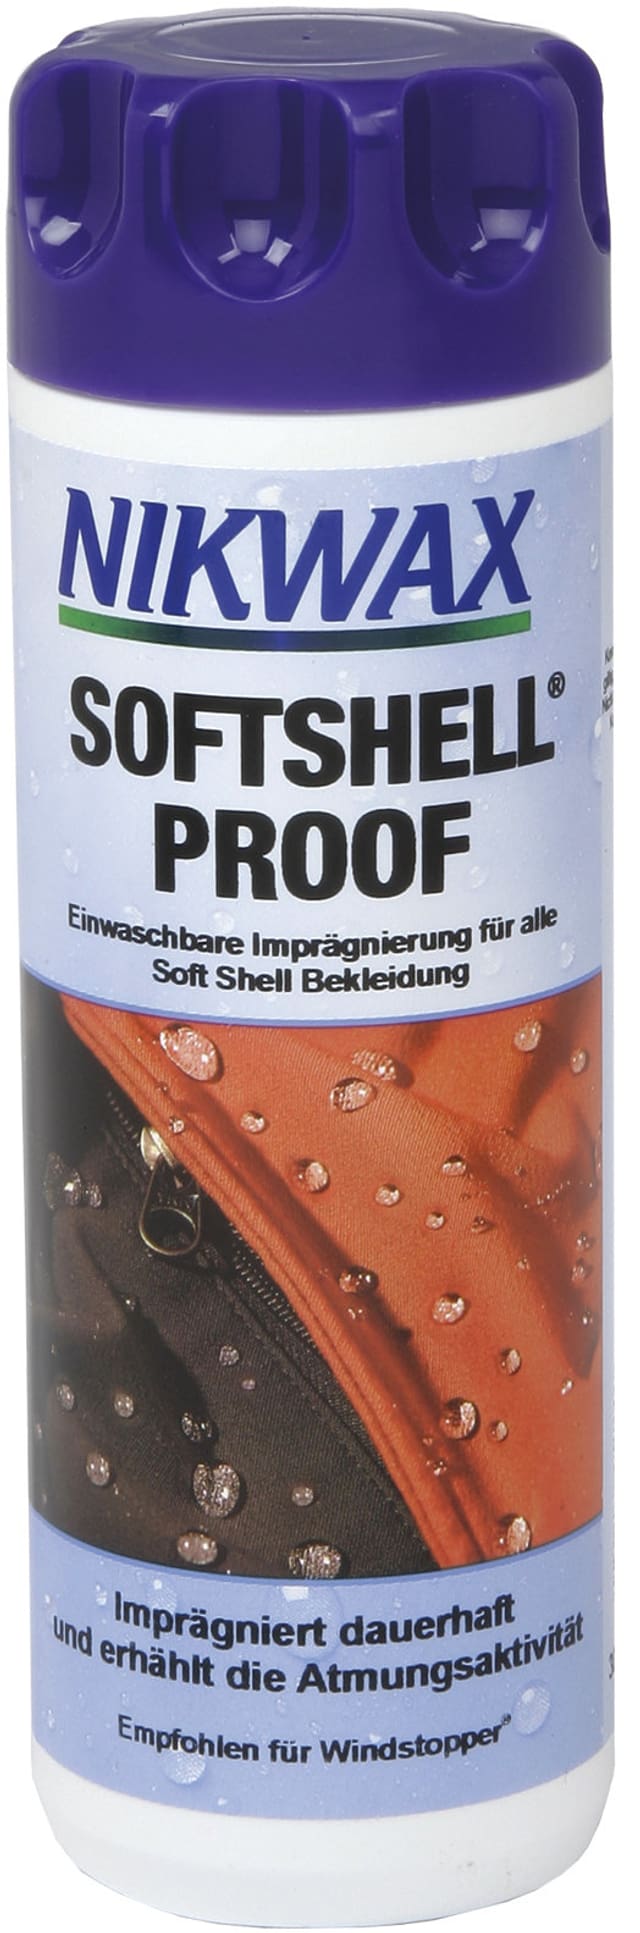 nikwax Softshell Proof 300ml Waschmittel